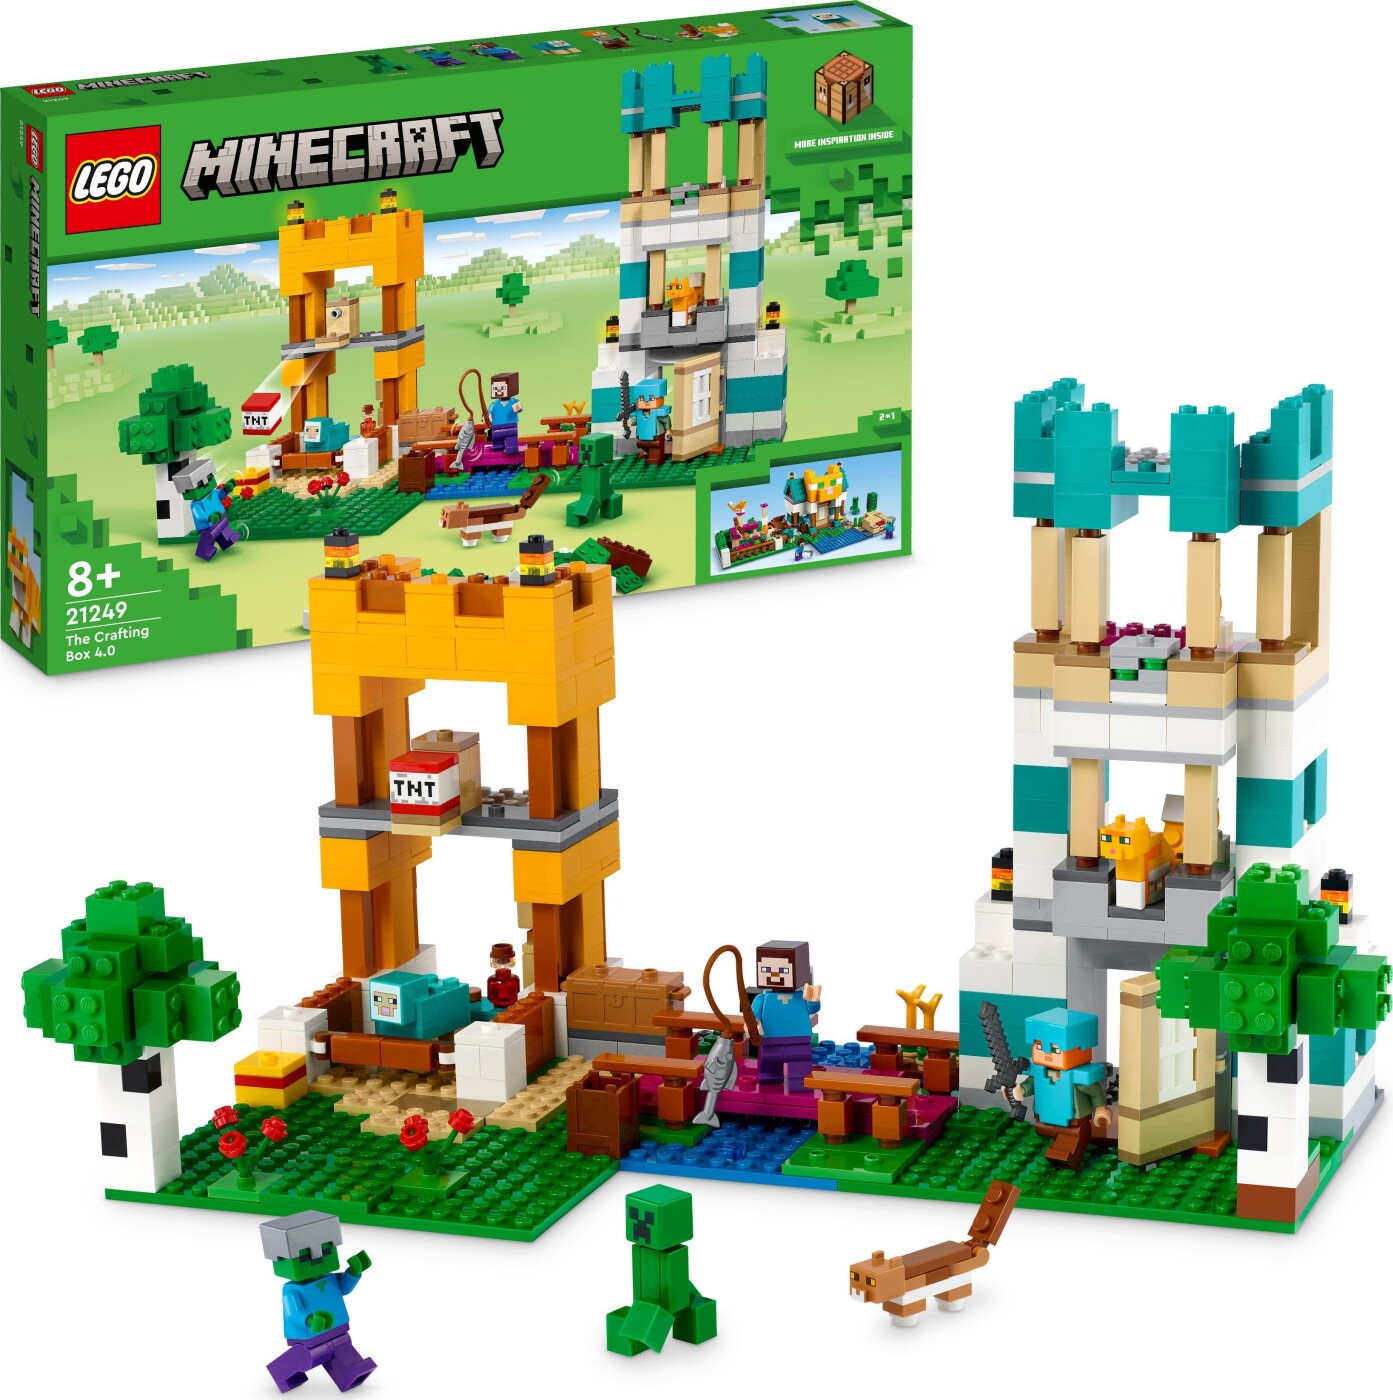 Billede af Lego Minecraft - Crafting-boks 4.0 - 21249